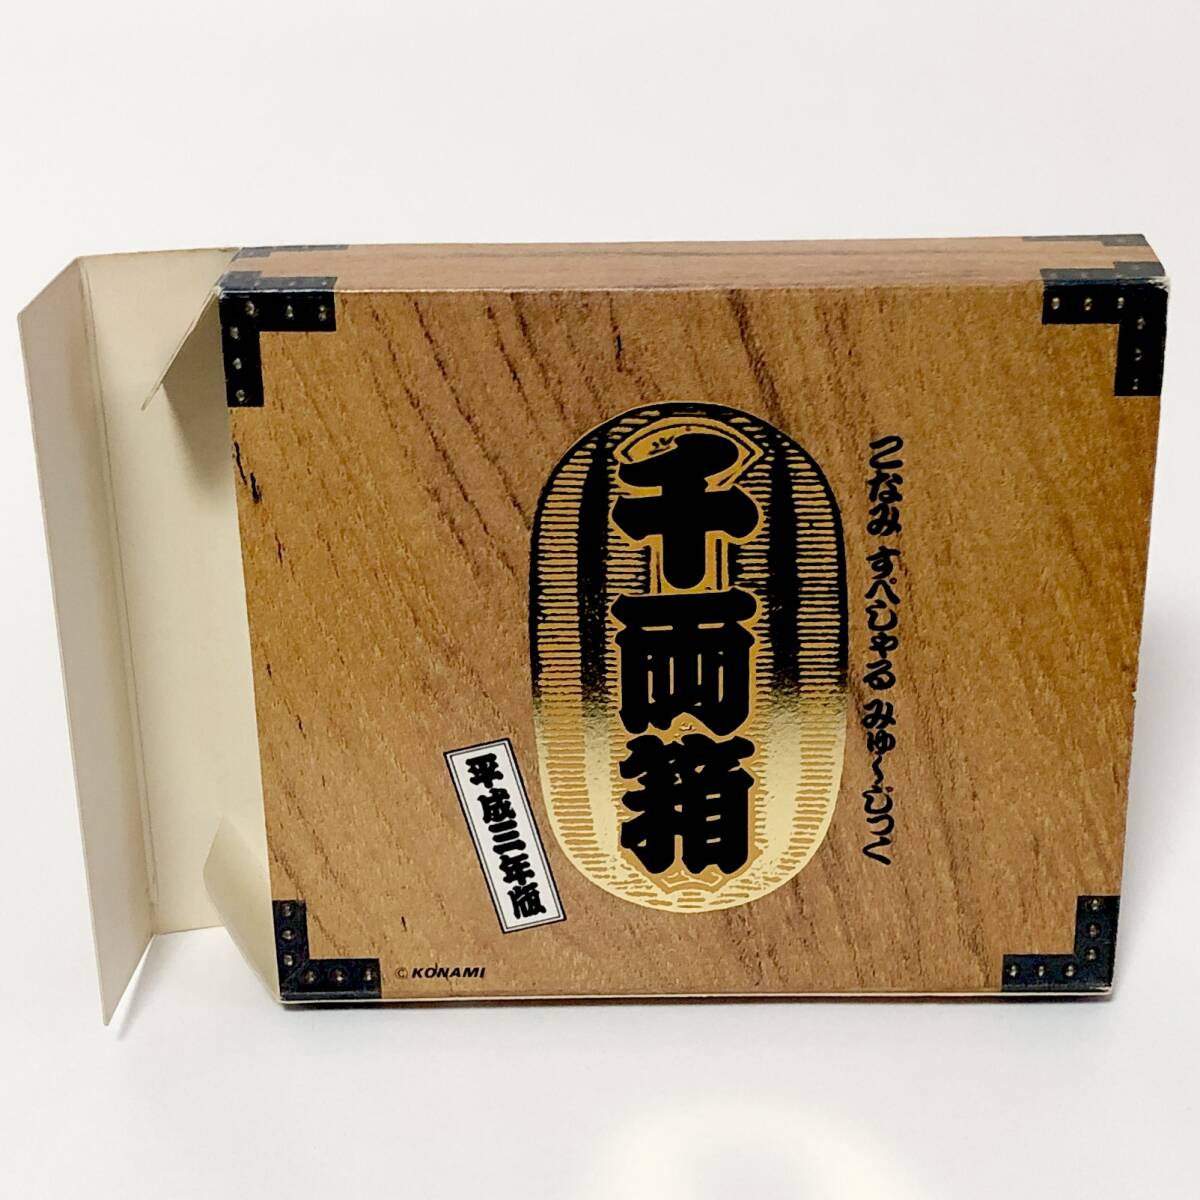 こなみ すぺしゃる みゅ〜じっく 千両箱 平成三年版 特典付き コナミ Konami Special Music Senryoubako Heisei Sannenban 3CD's + VSDの画像2